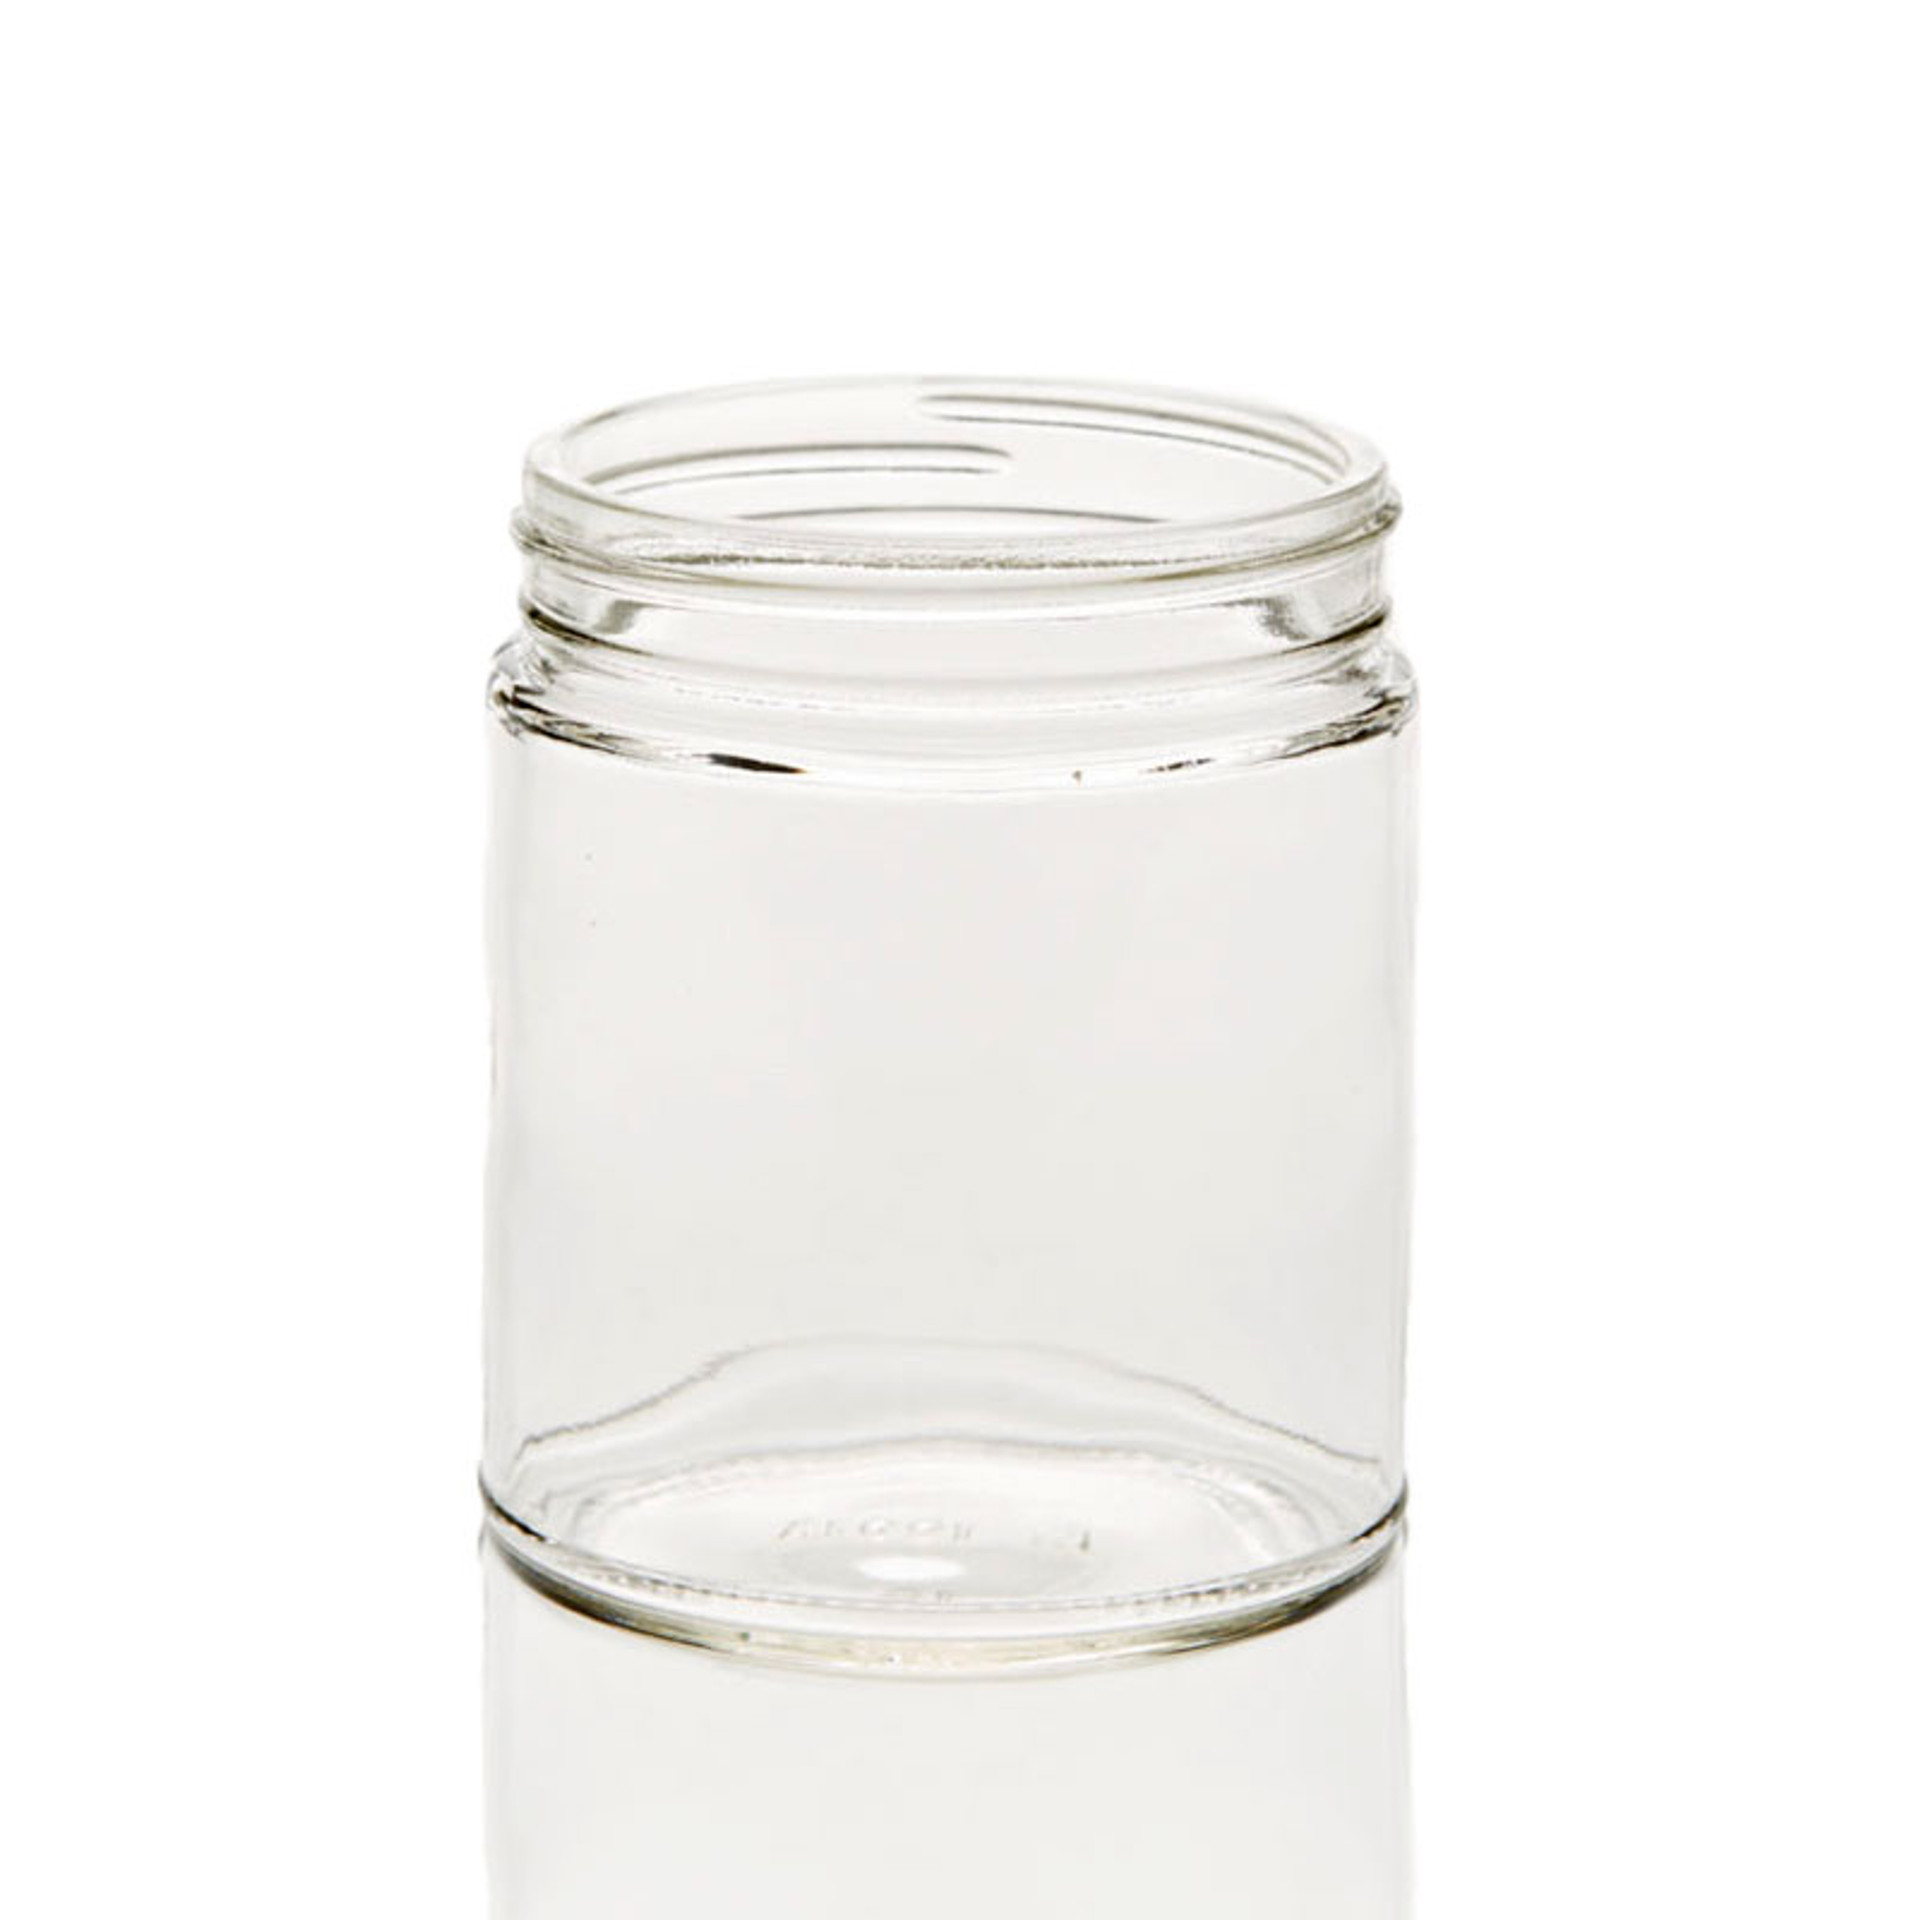 Large Salsa Jar | Wholesale Salsa Jars 12 pc Case